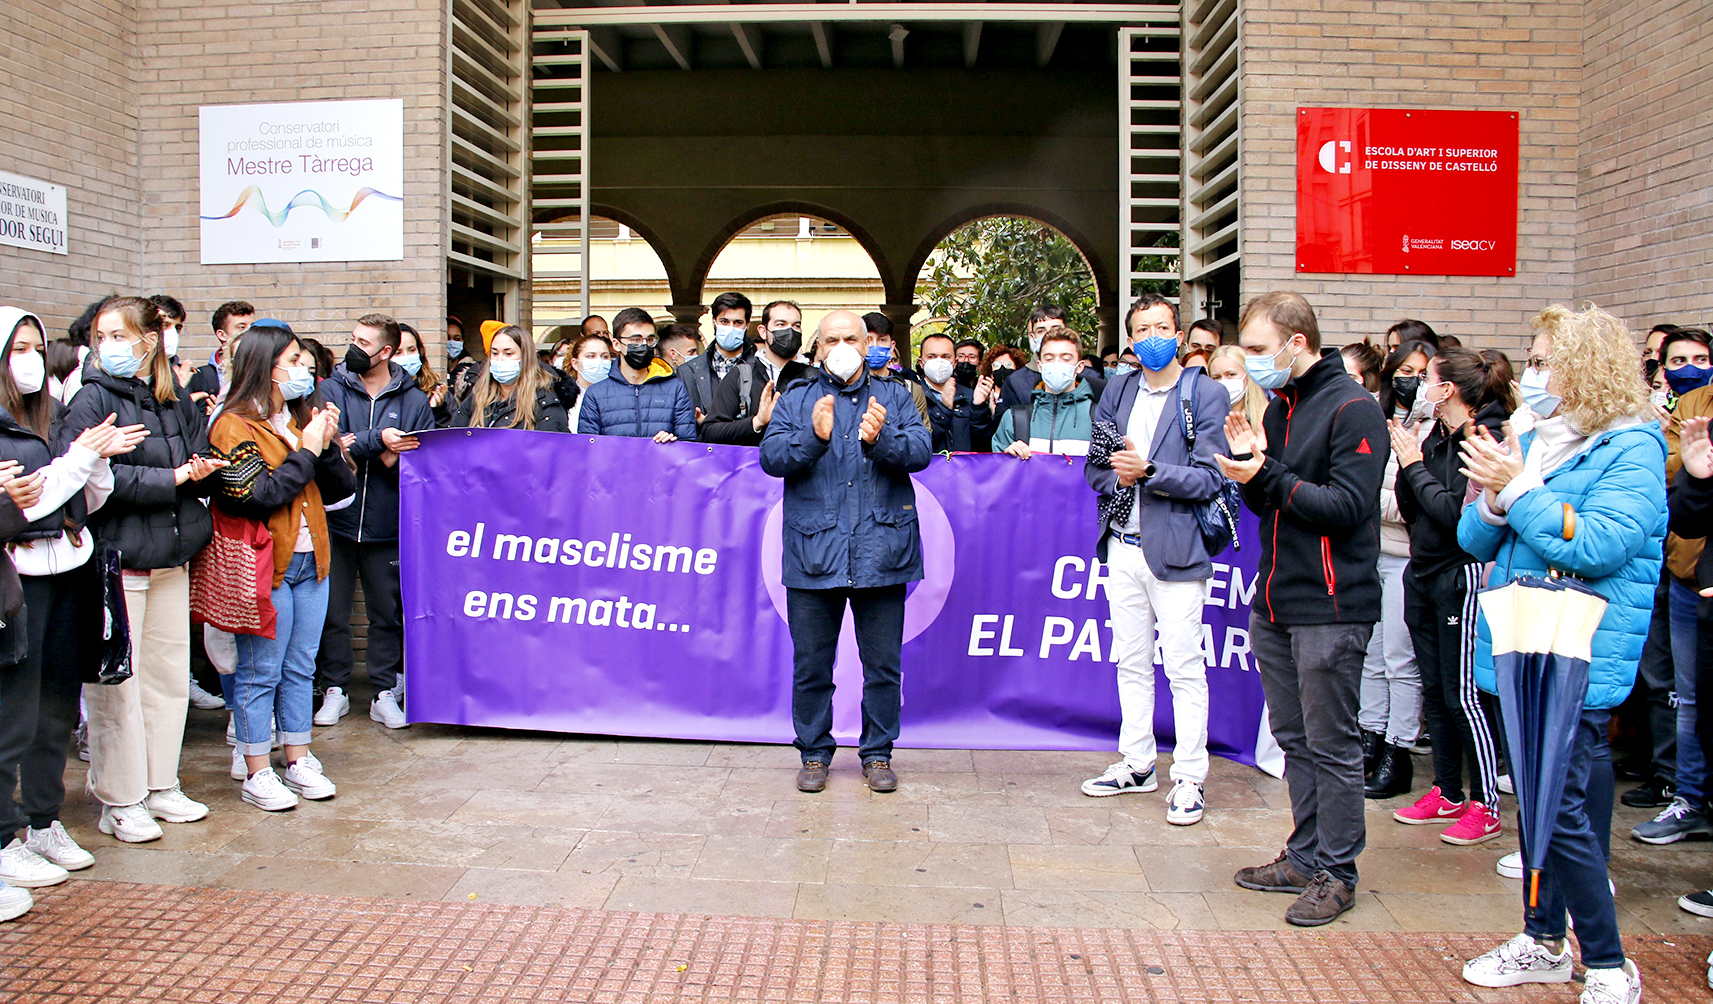 El conservatorio Salvador Seguí condena la agresión a una de sus alumnos.